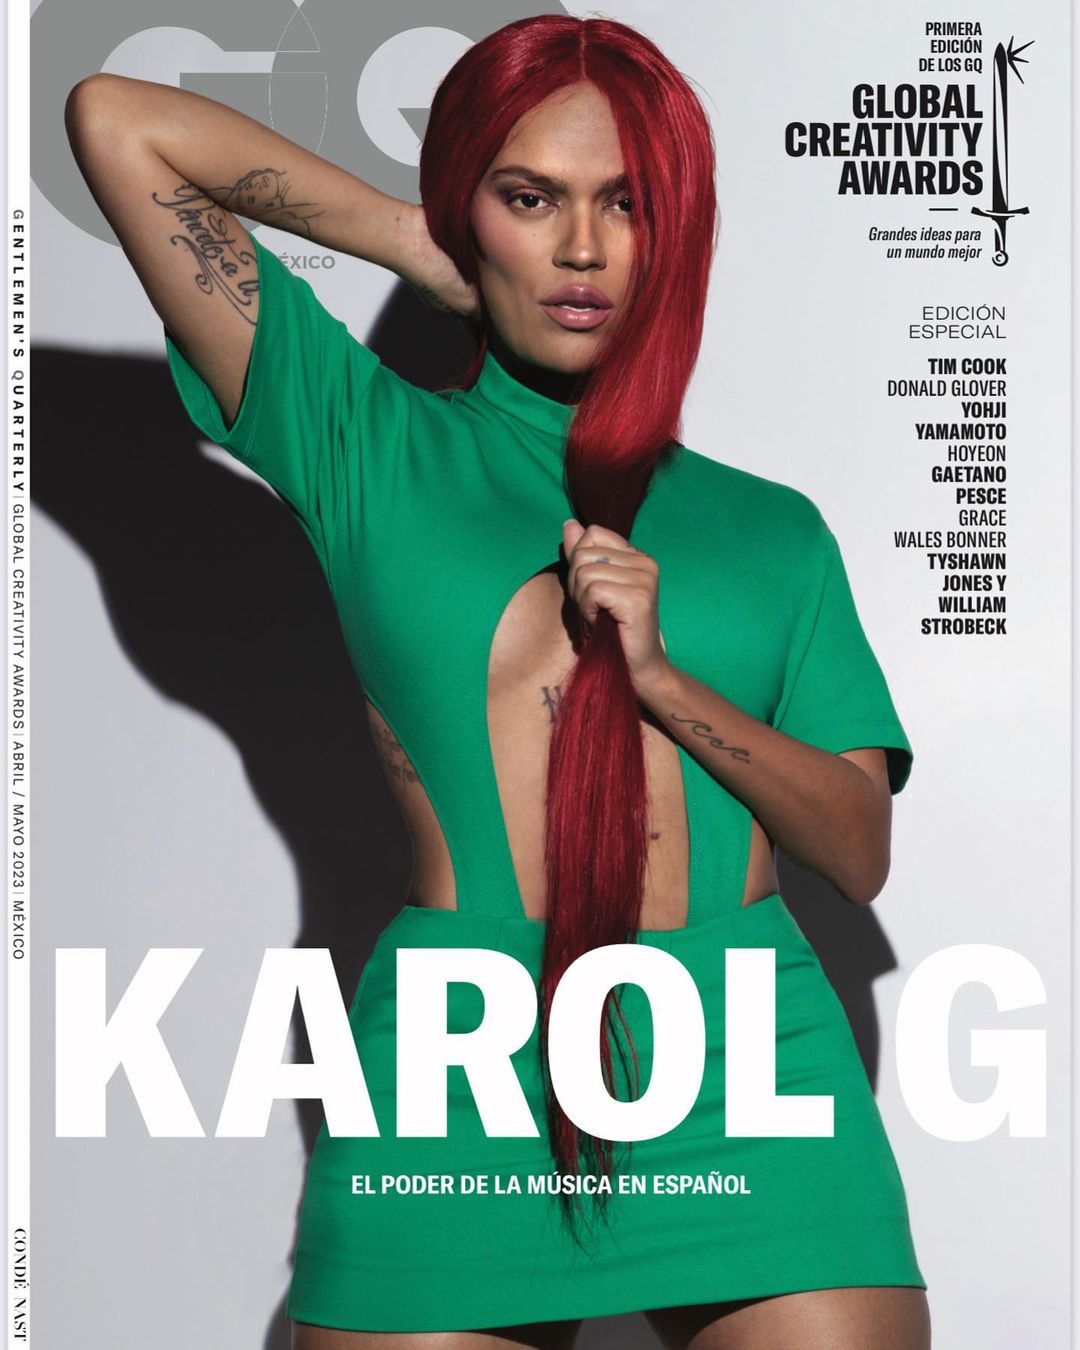 Esta fue la portada que causó incomodidad en Karol G y una gran cantidad de sus seguidores | Foto: Instagram @karolg